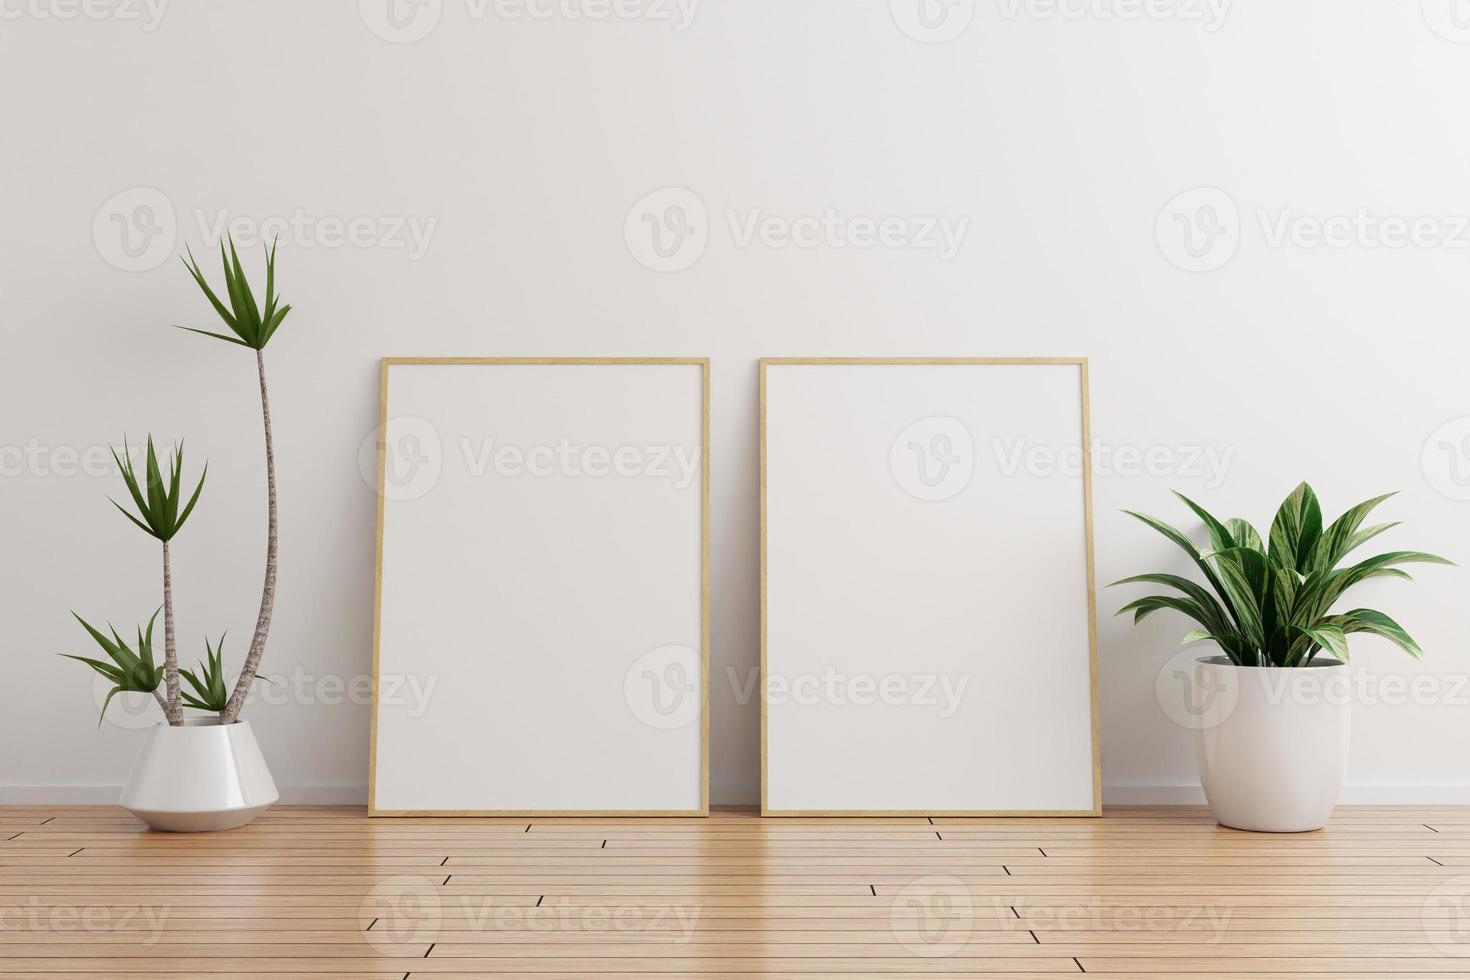 zwei vertikale Bilderrahmen aus Holz auf weißem Wand leerer Raum mit Pflanzen auf einem Holzboden foto